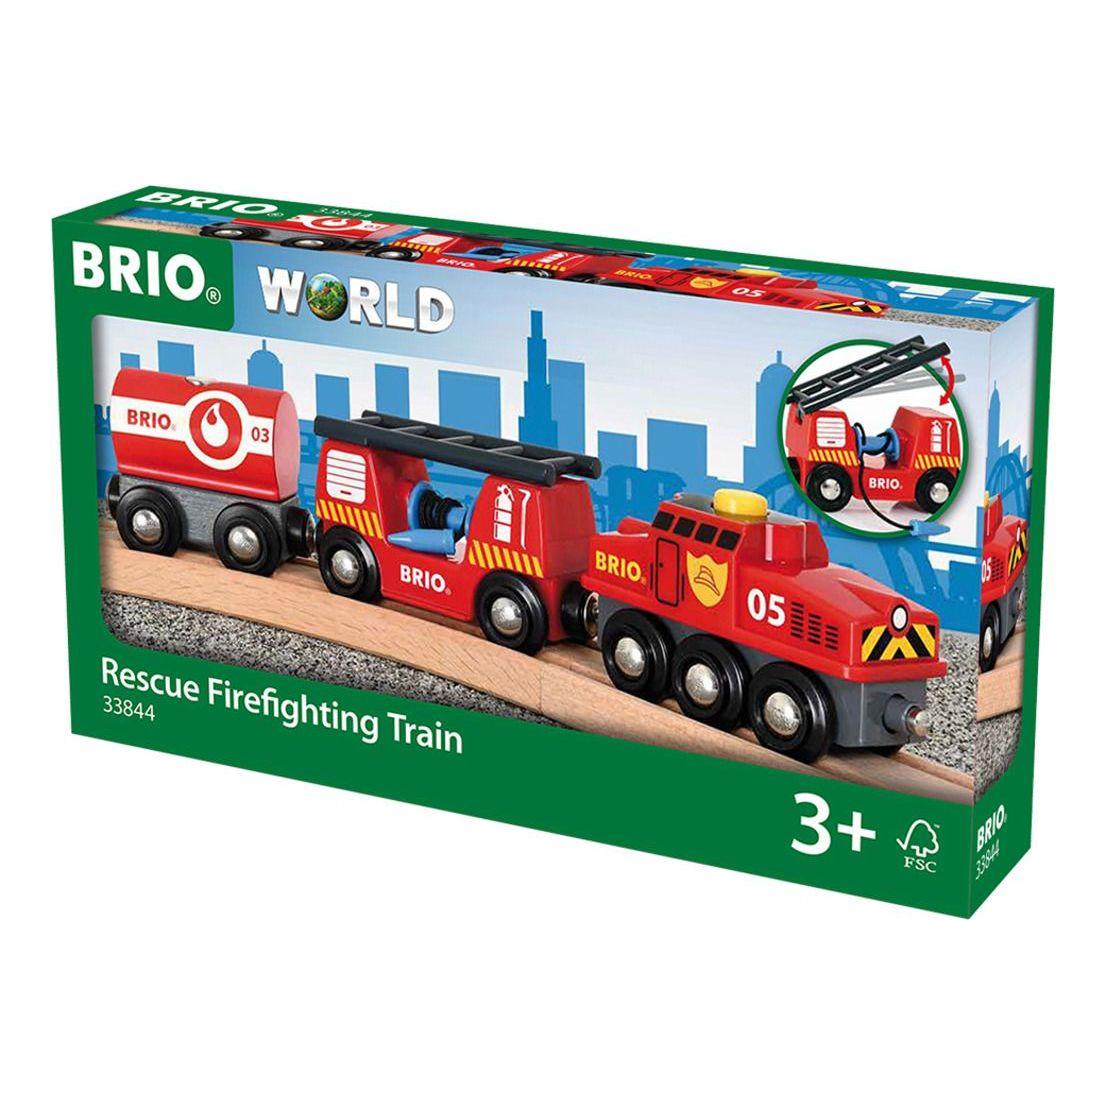 Brio Rescue Fire Fighting Train BRIO